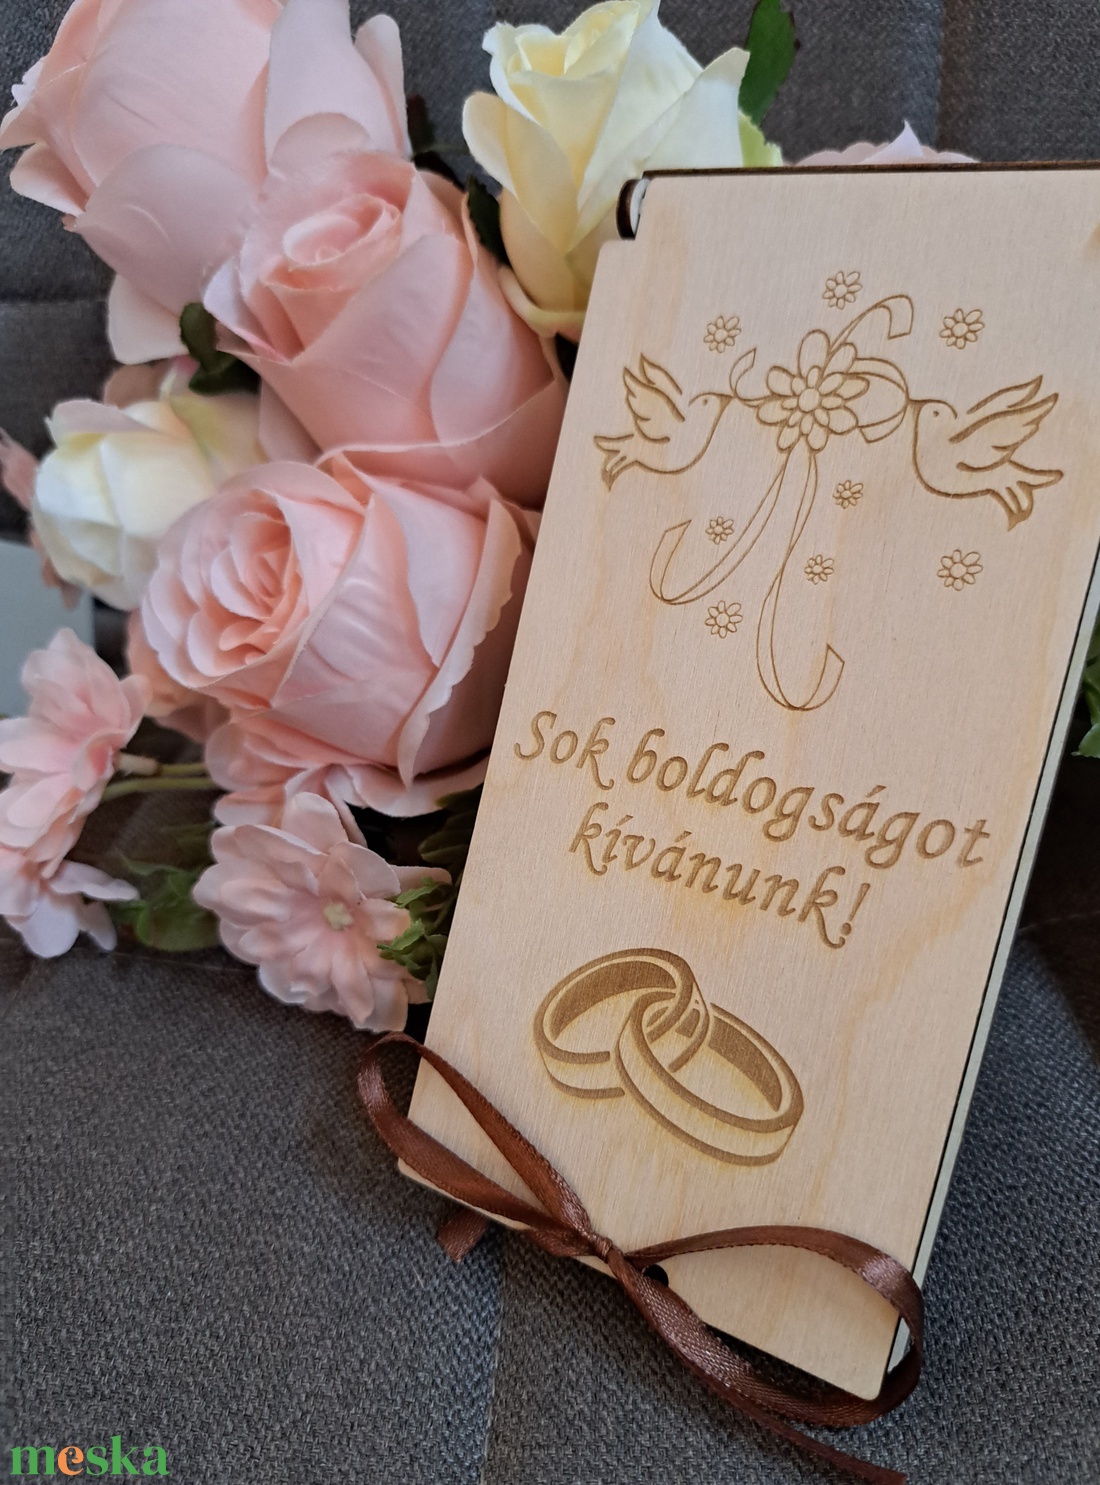 Esküvői pénzátadó  - esküvő - emlék & ajándék - nászajándék - pénzátadó doboz - Meska.hu